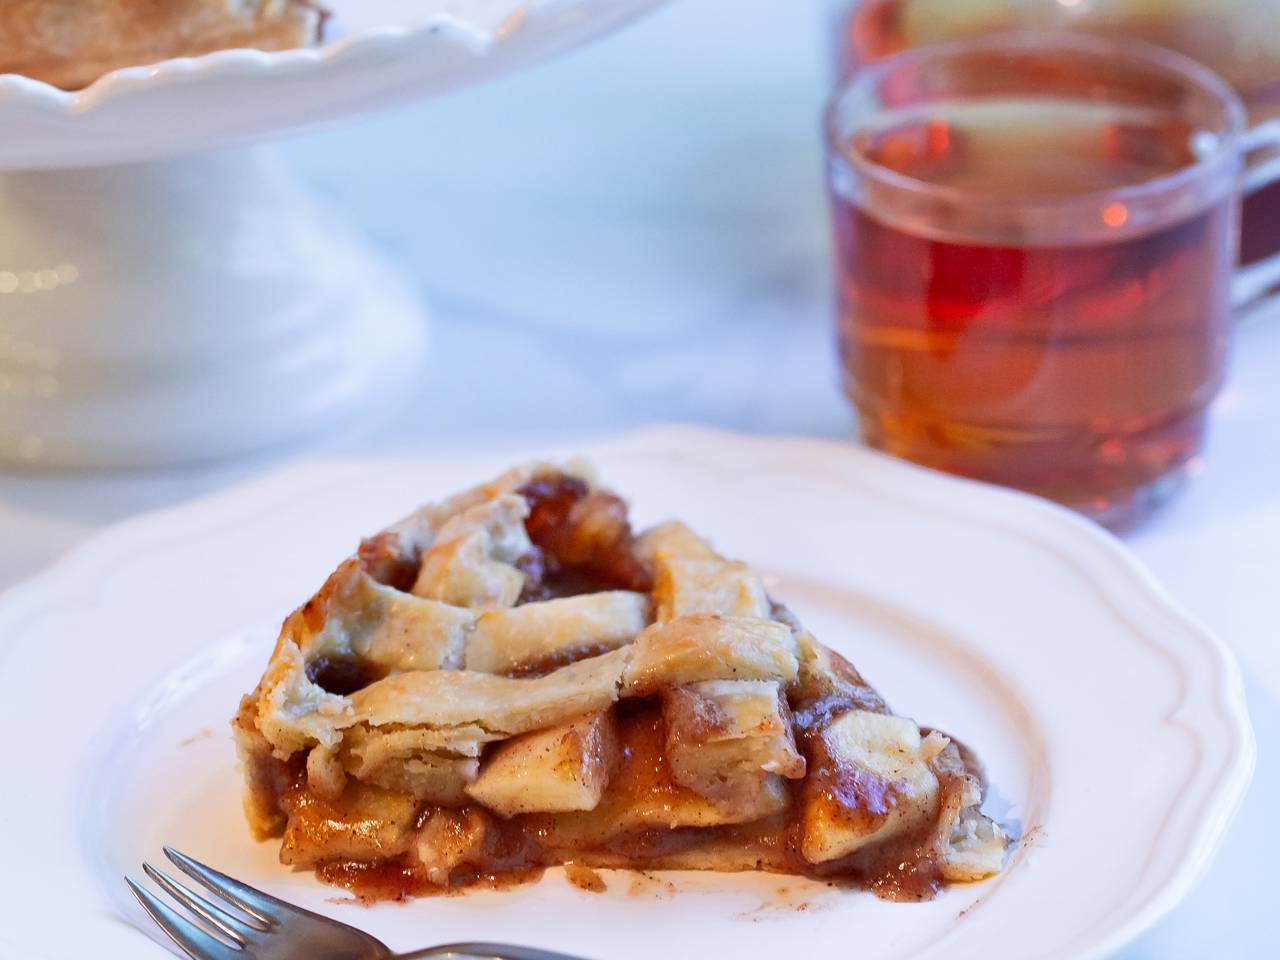 Caramel Apple Pie Recipe